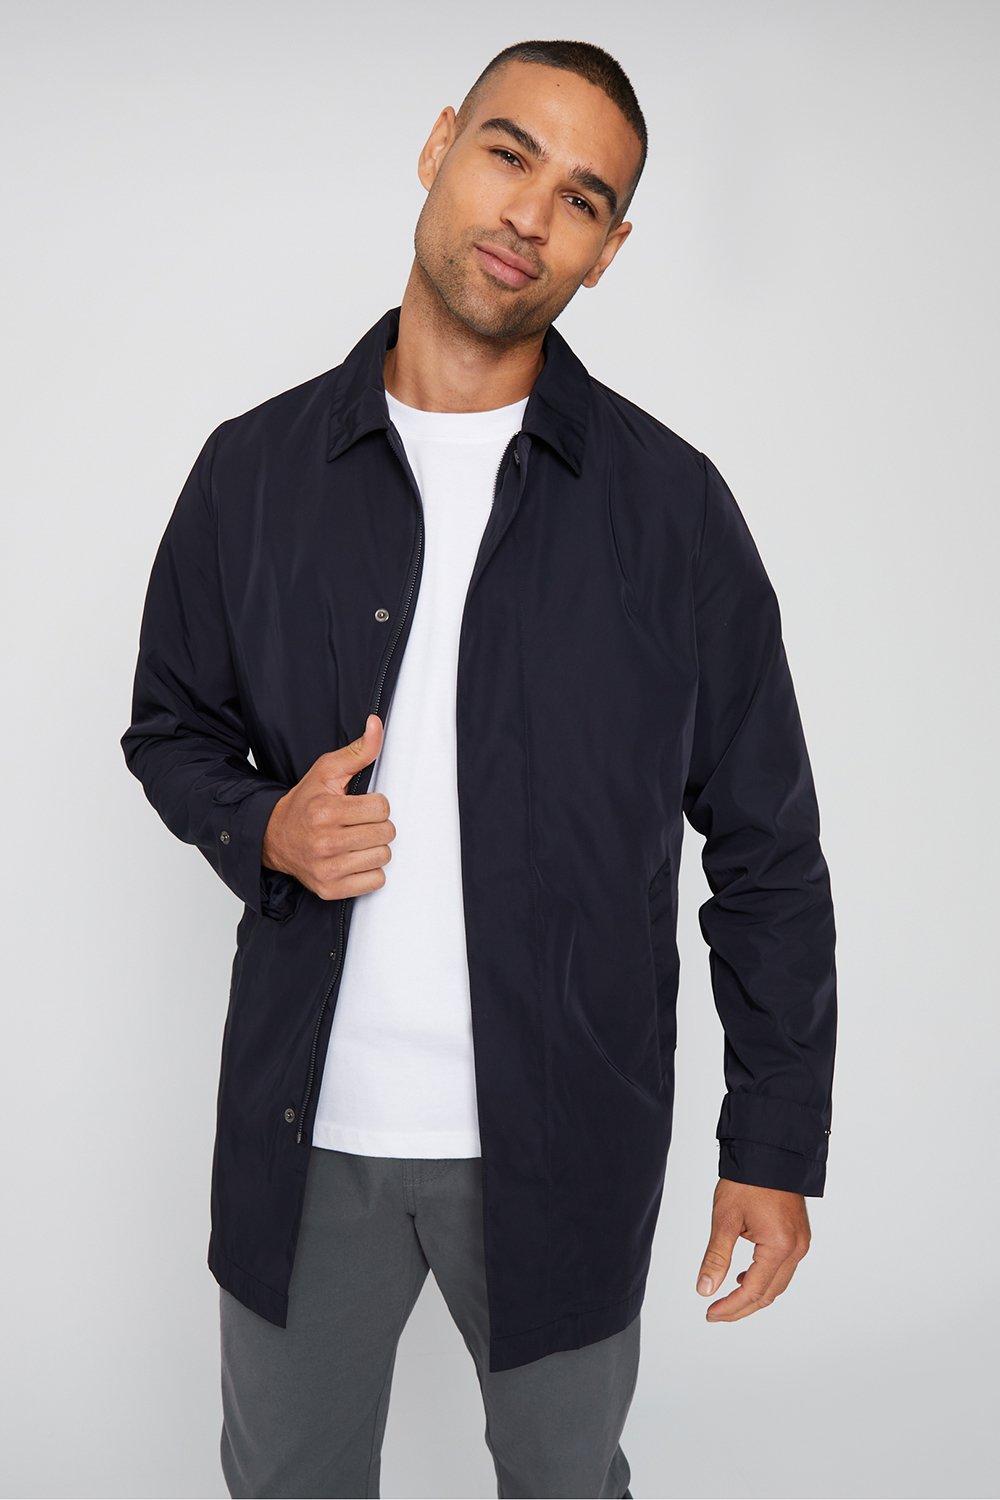 Jackets & Coats | 'Stephen' Luxe Showerproof Zip Up Collared Coat ...